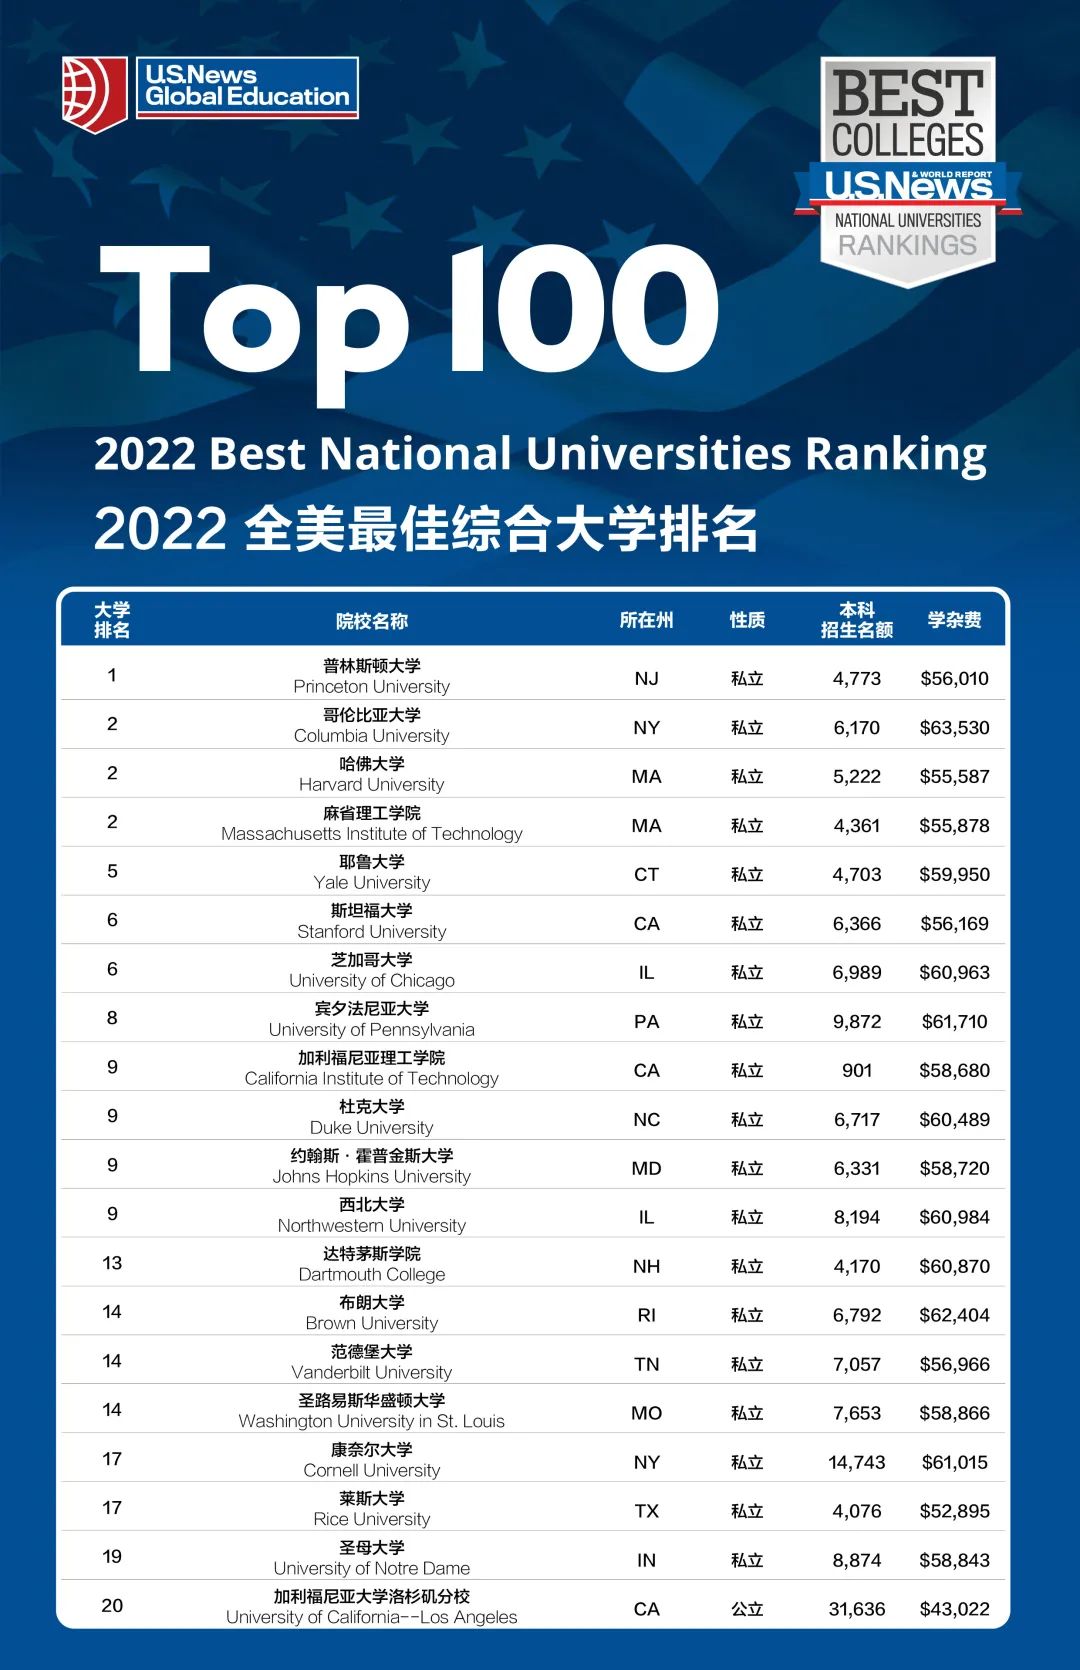 2022年USNews 美国大学排名发布 TOP100综合大学和TOP50文理学院完整榜单在此！翰林国际教育